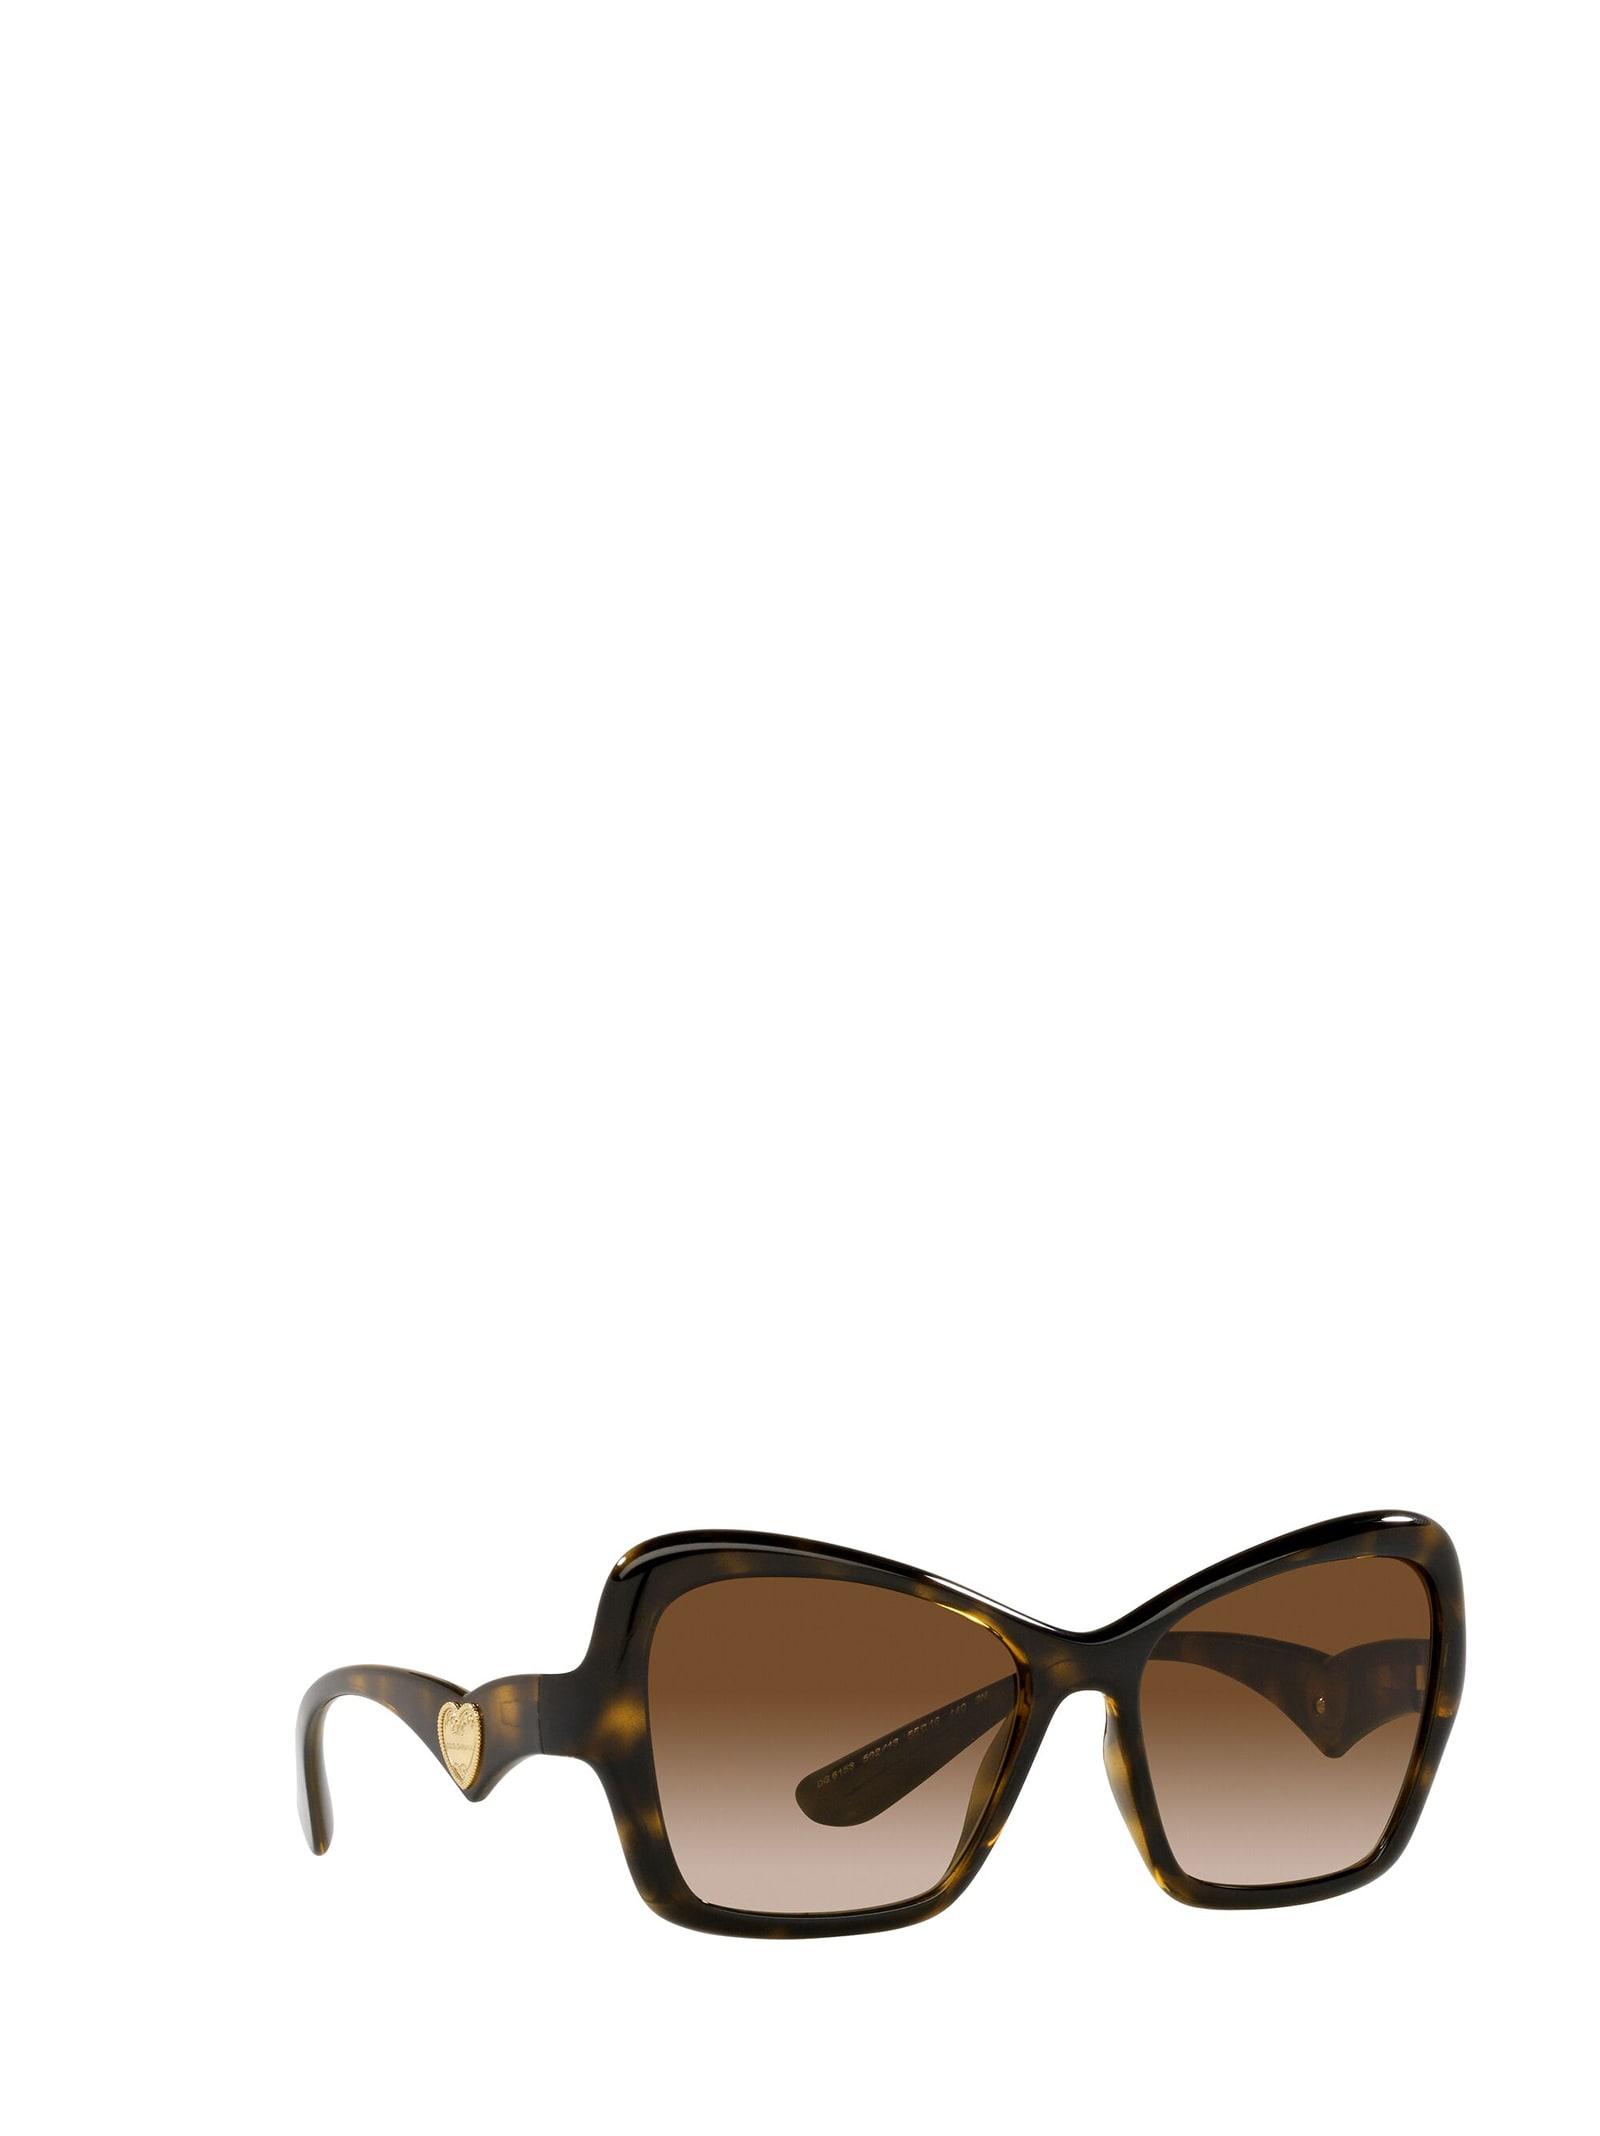 19 Dolce & Gabbana Lunettes de soleil/sunglasses dg3153p 2774 52/15 140/494 